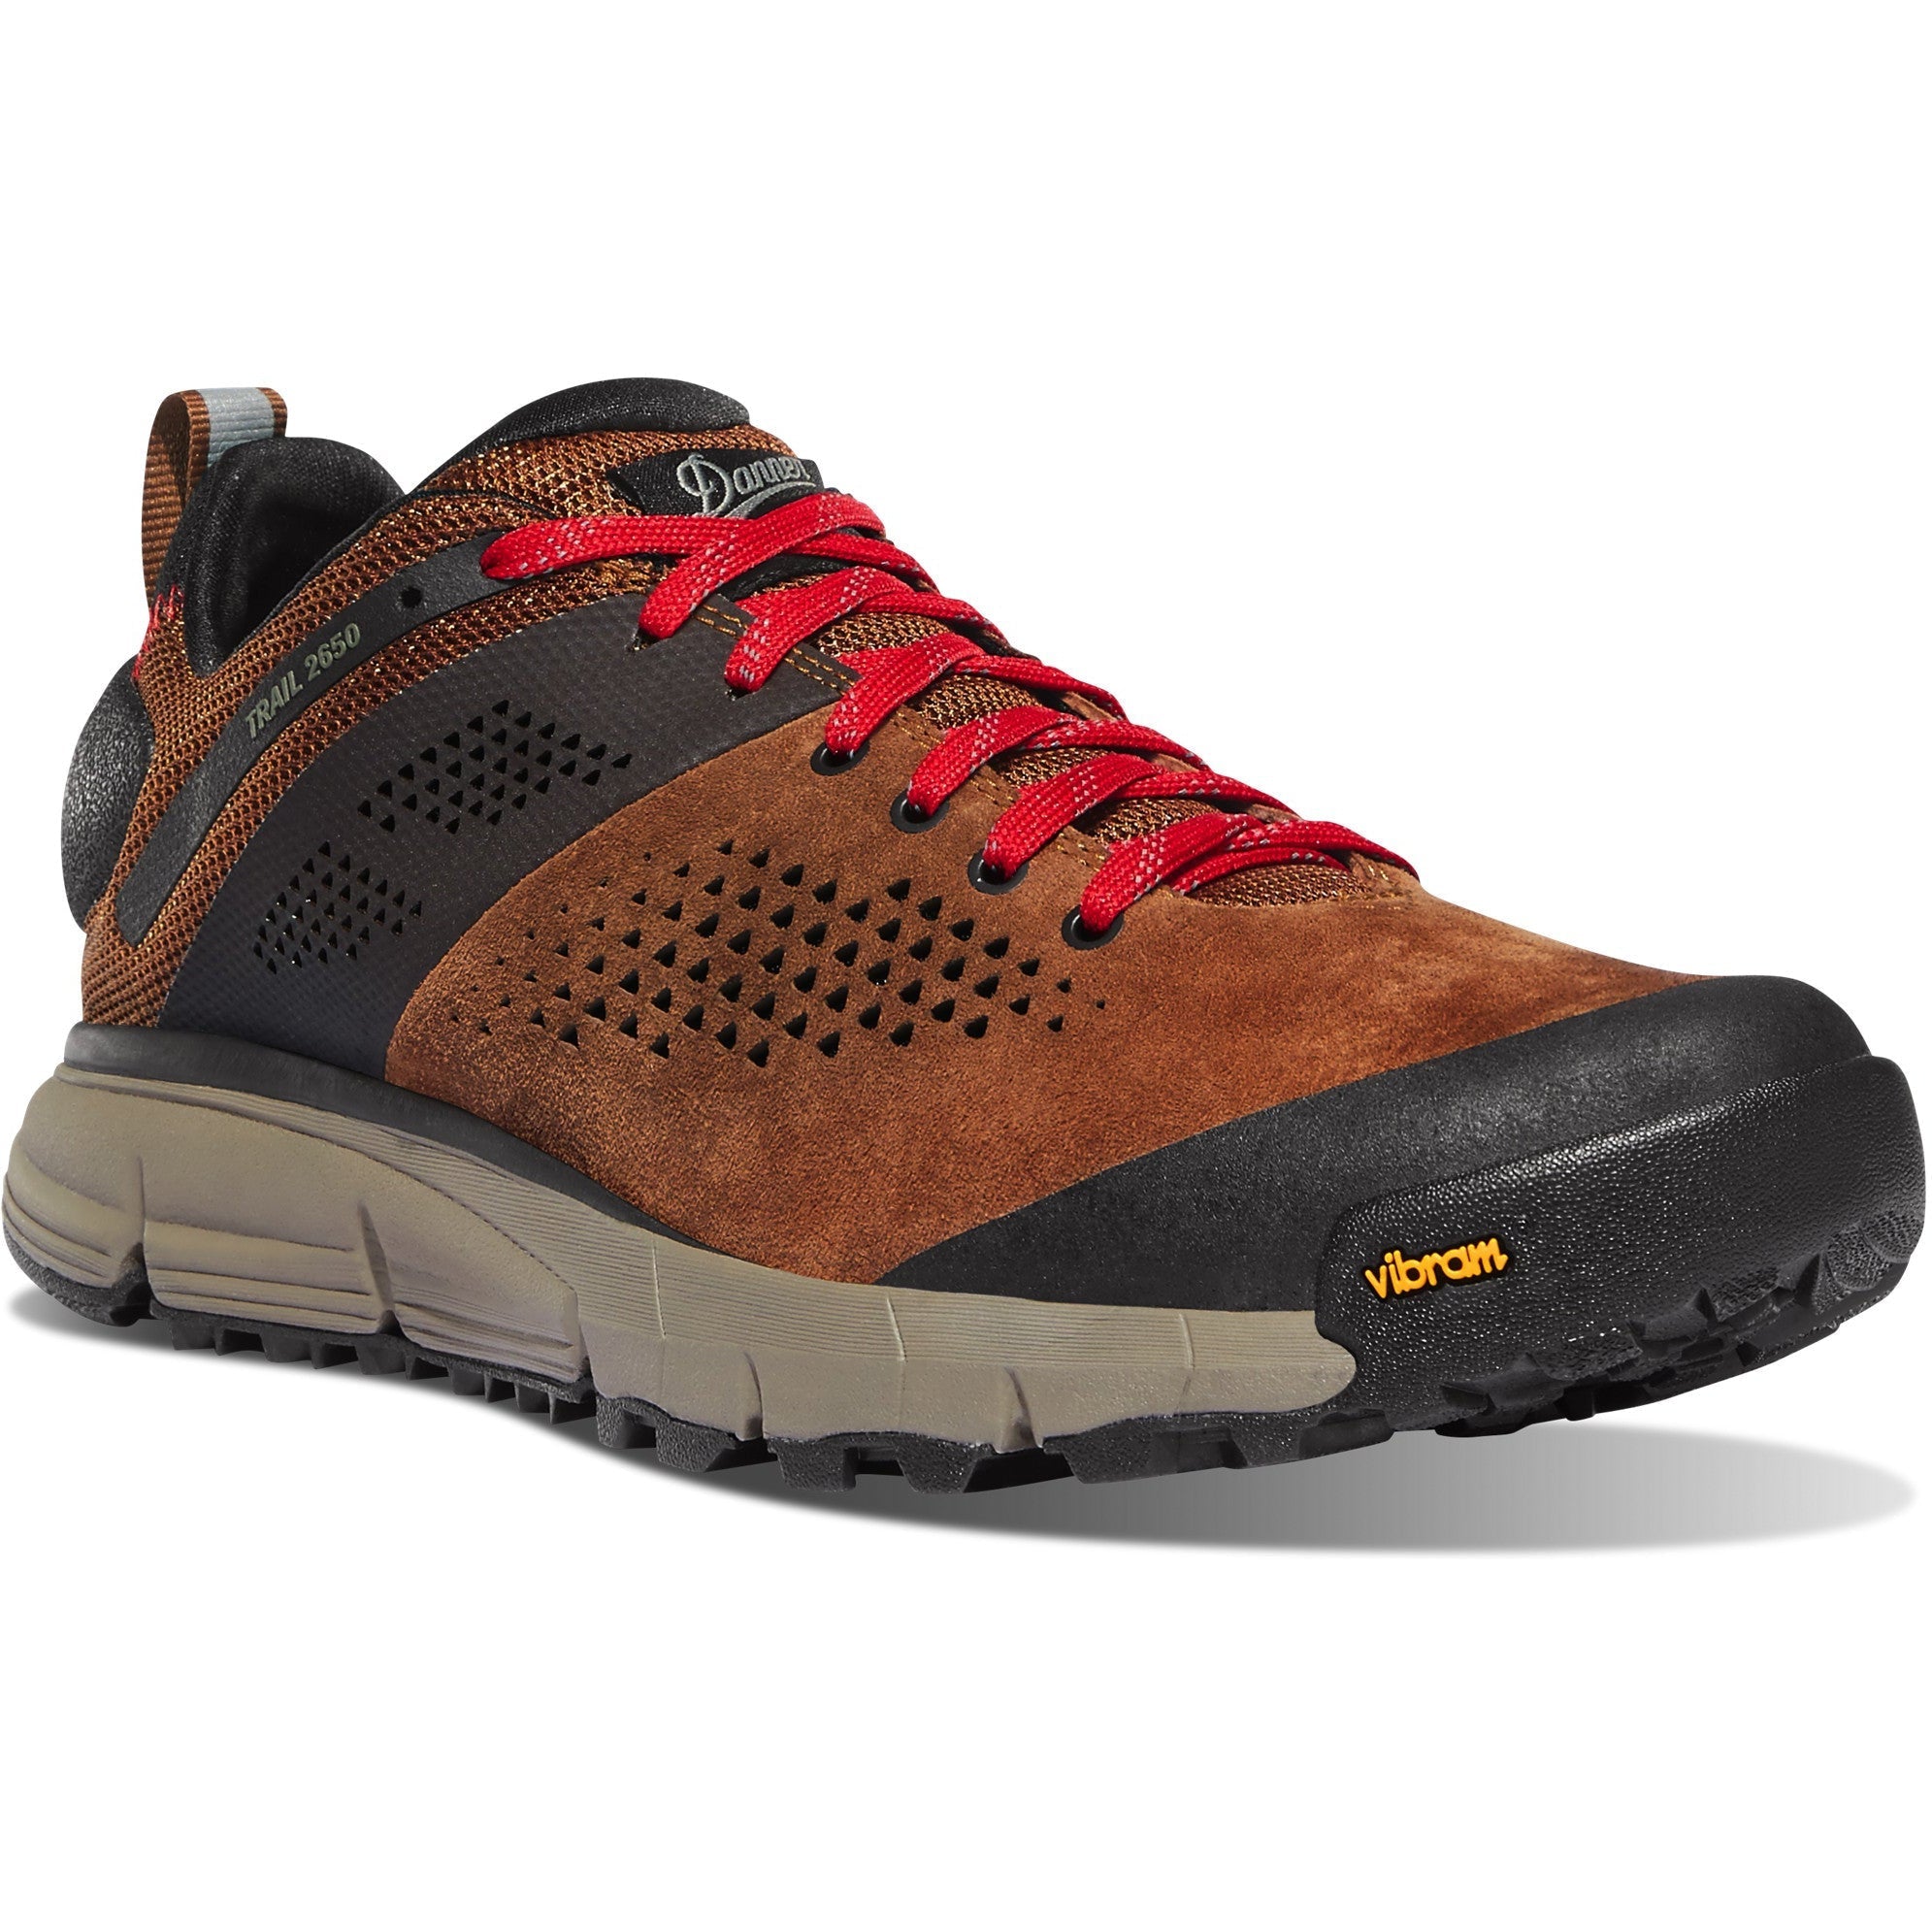 Danner Men's Trail 2650 3" Hiking Shoe - Brown - 61272 7 / Medium / Brown - Overlook Boots